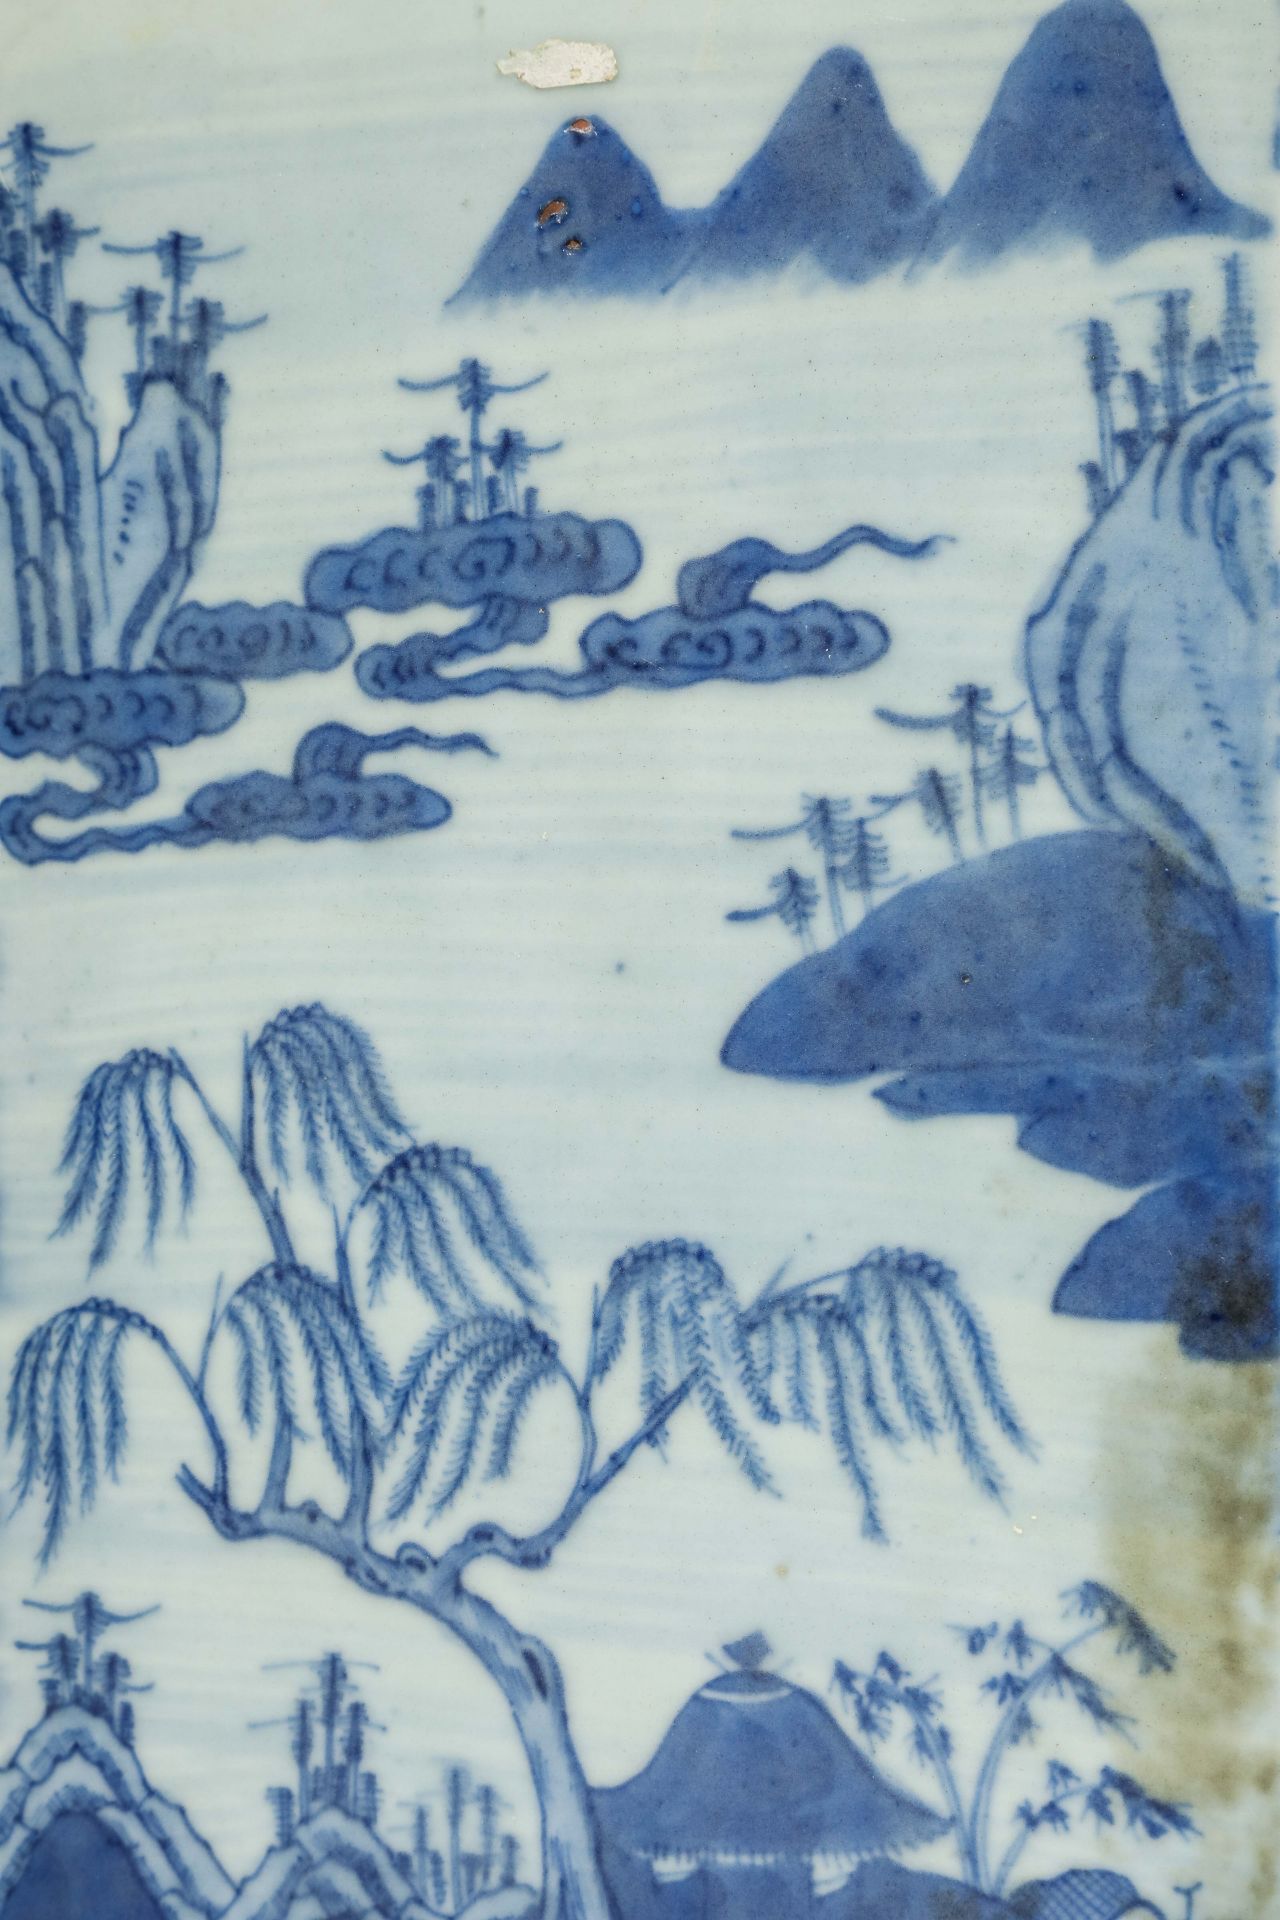 Suite de neuf pots à thé quadrangulaire en porcelaine blanche décoré en bleu sous couverte de - Image 47 of 47